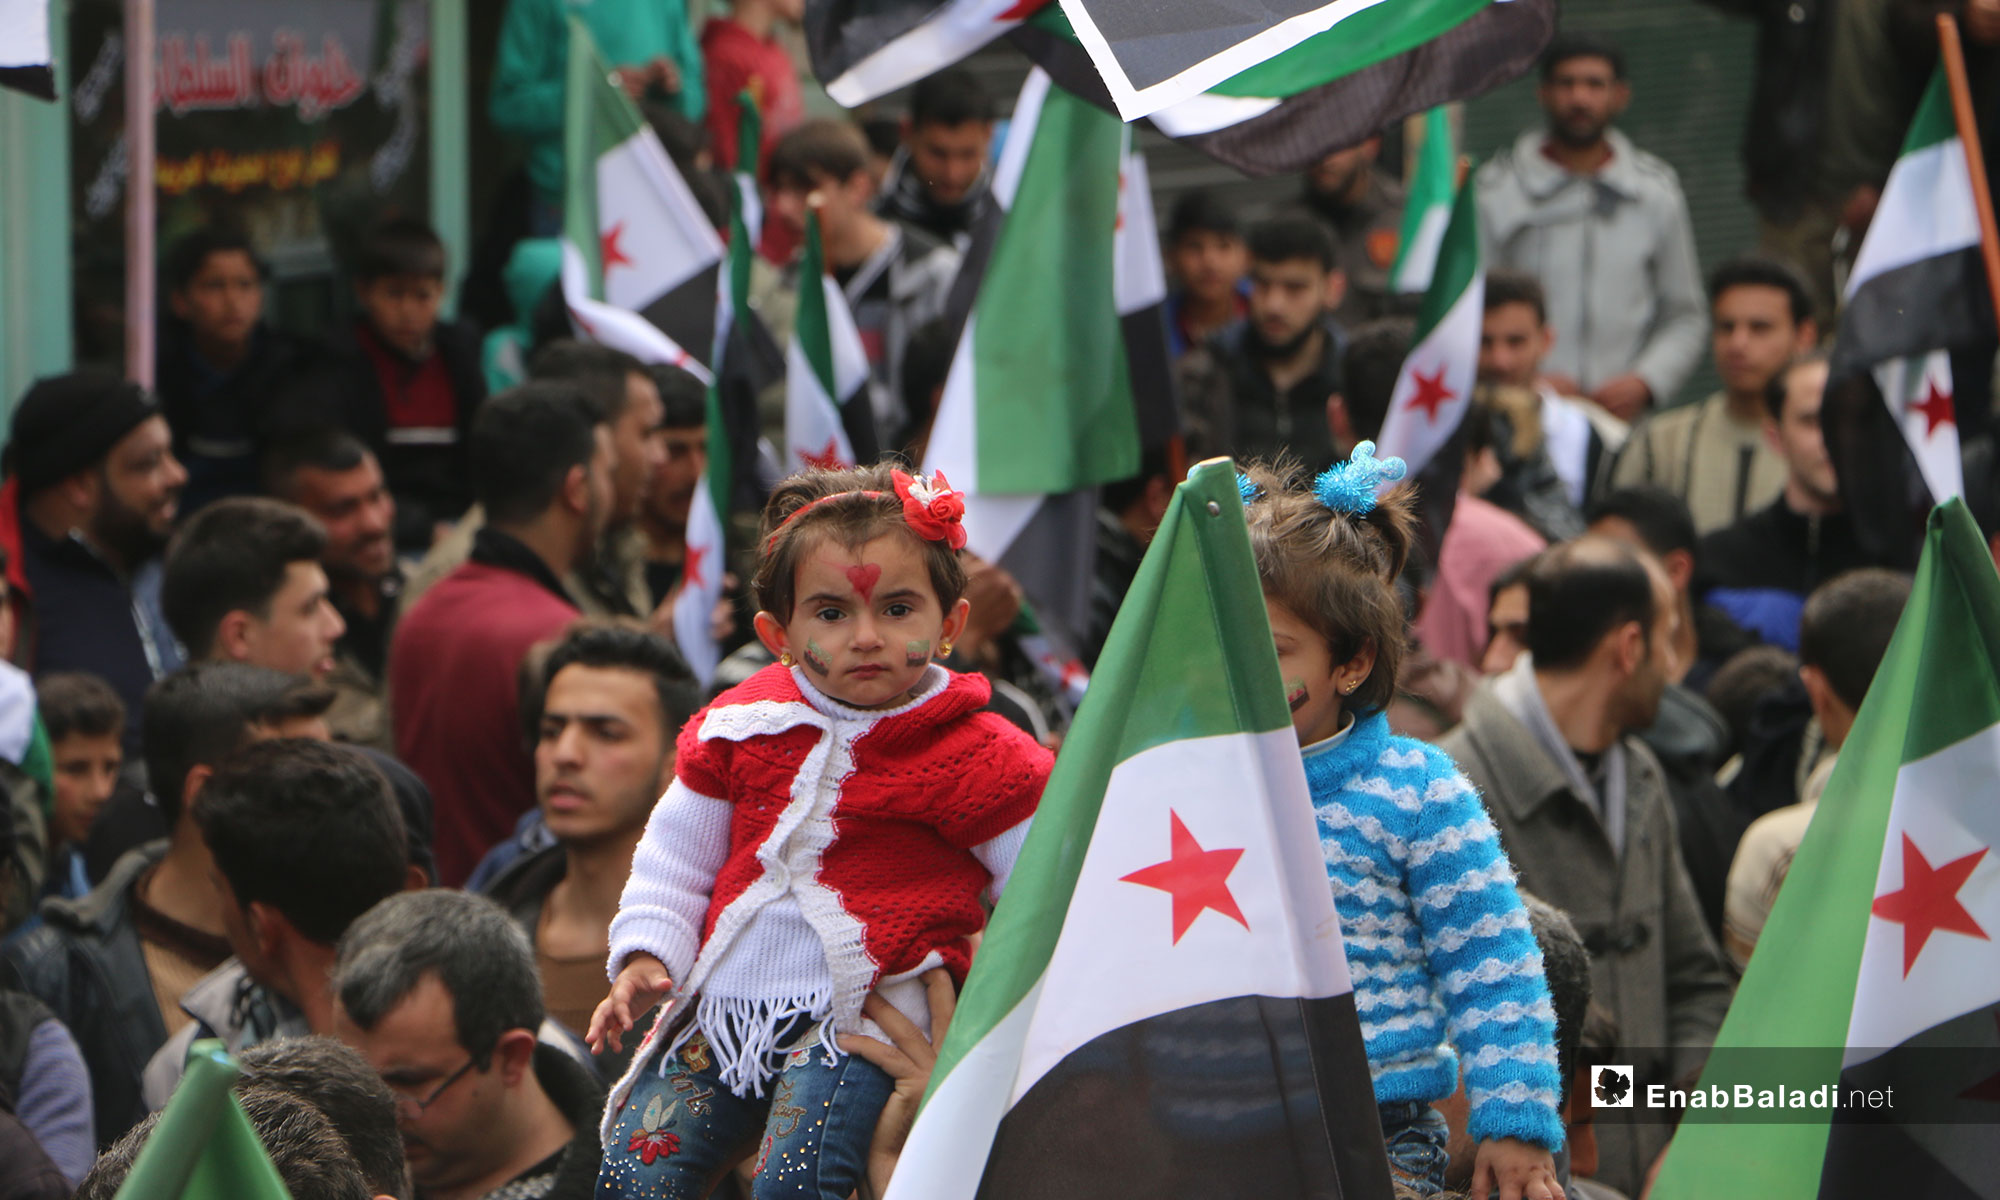 في الذكرى الثامنة للثورة السورية مظاهرة في بلدة مارع بريف حلب الشمالي - 15 من آذار 2019 (عنب بلدي)